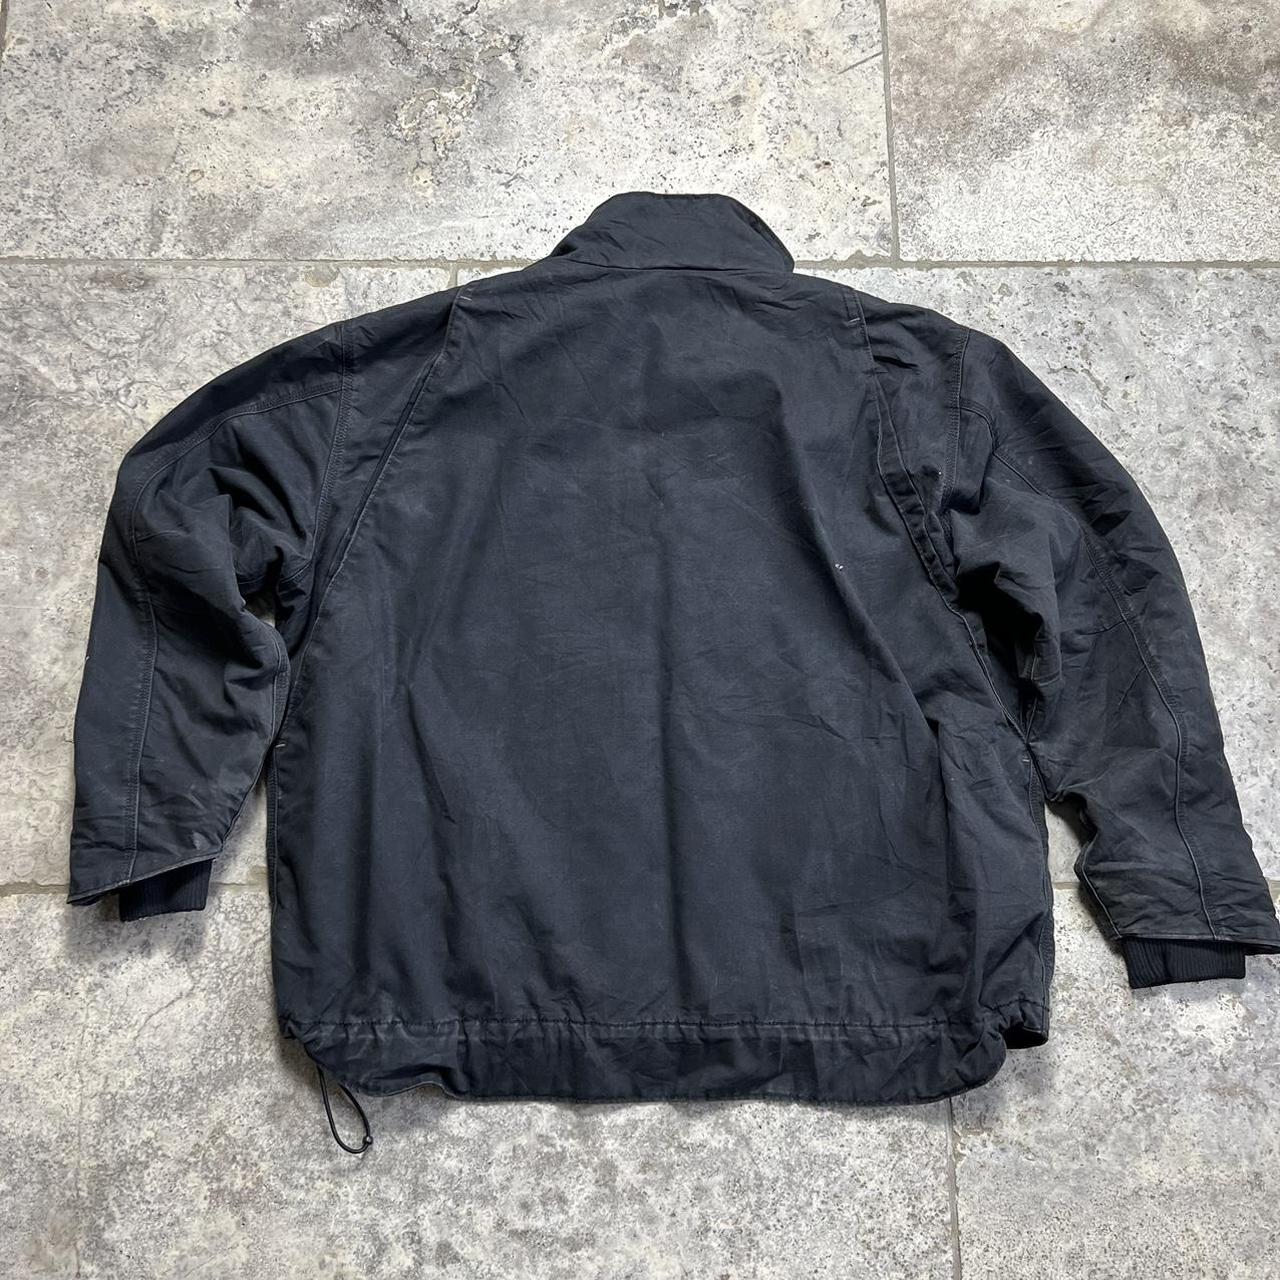 Carhartt jacket 2XL